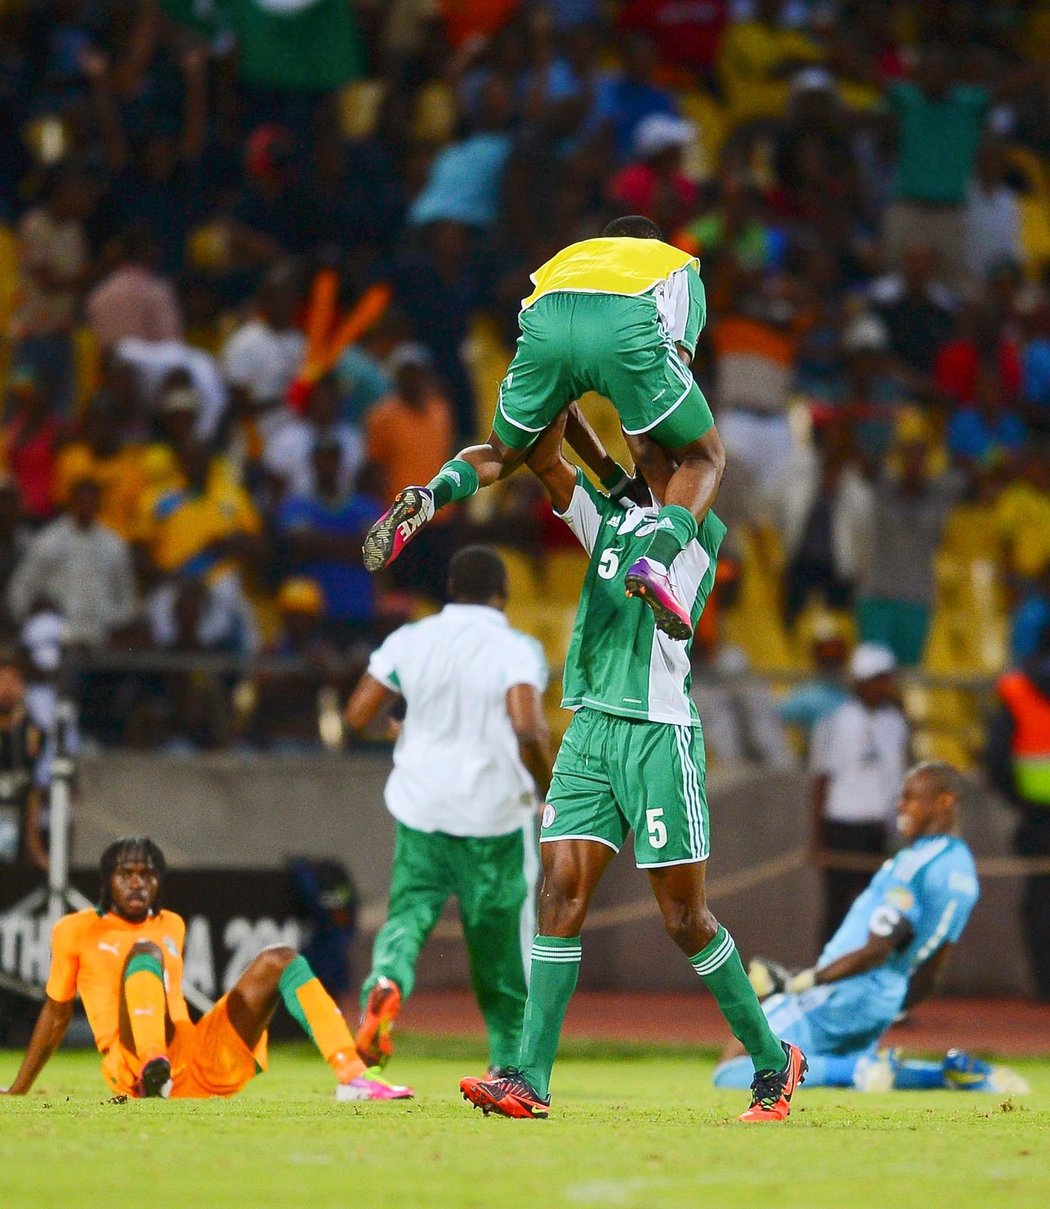 Nigérie ve čtvrtfinále afrického fotbalového šampionátu vyhrála nad Pobřežím slonoviny se všemi jeho hvězdami 2:1 a vítězové mocně slavili